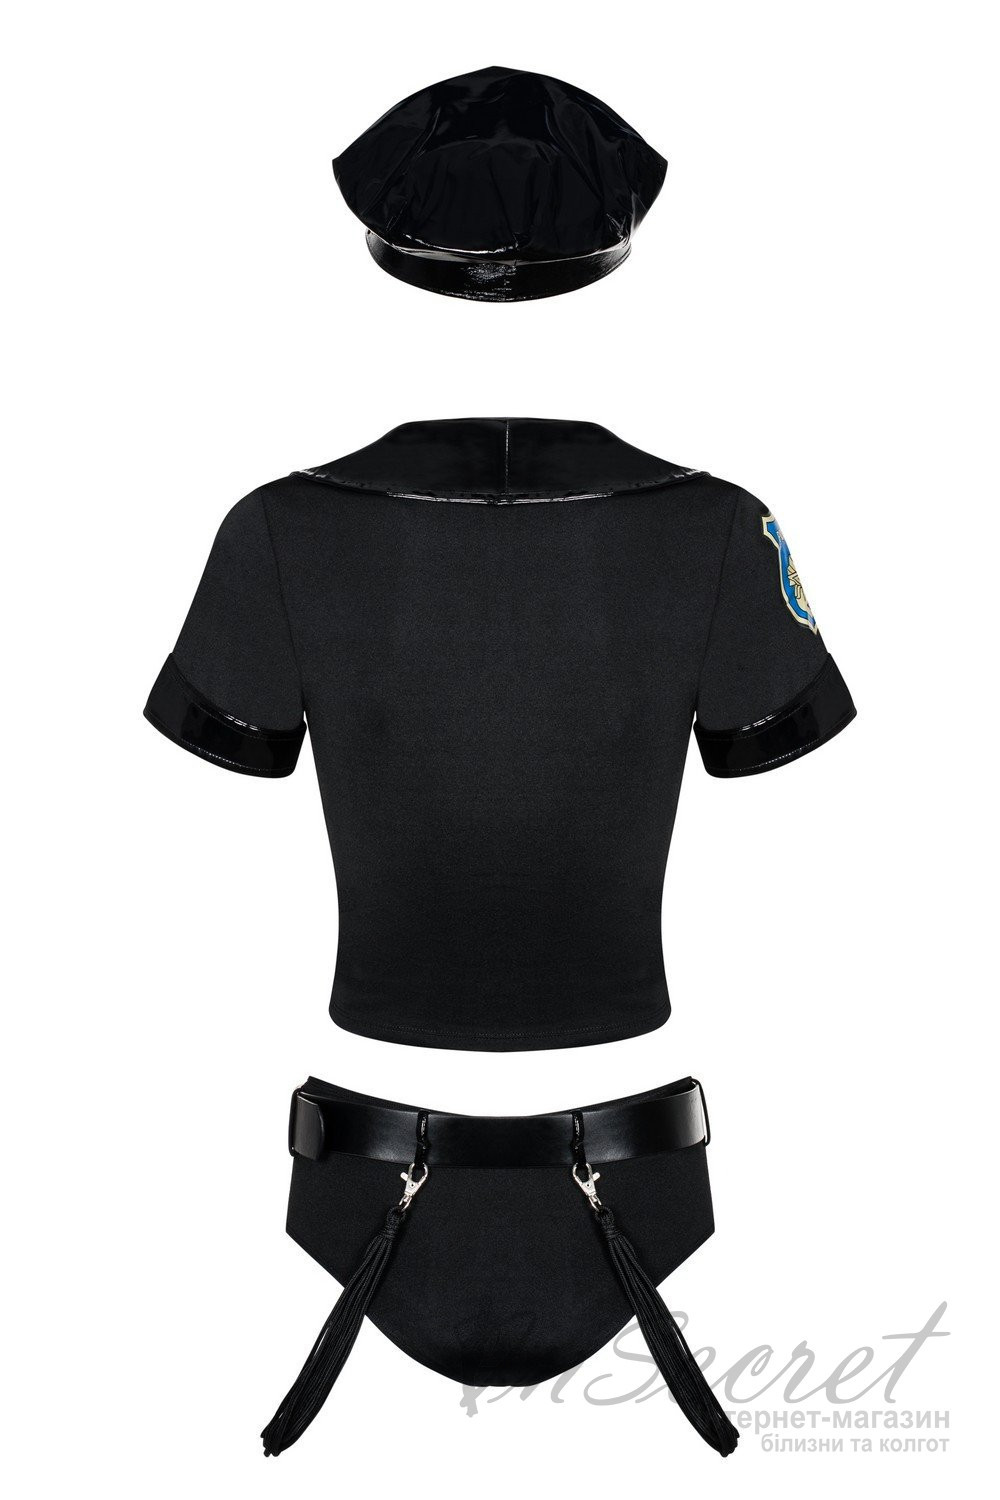 Ігровий костюм поліцейського Obsessive Police set